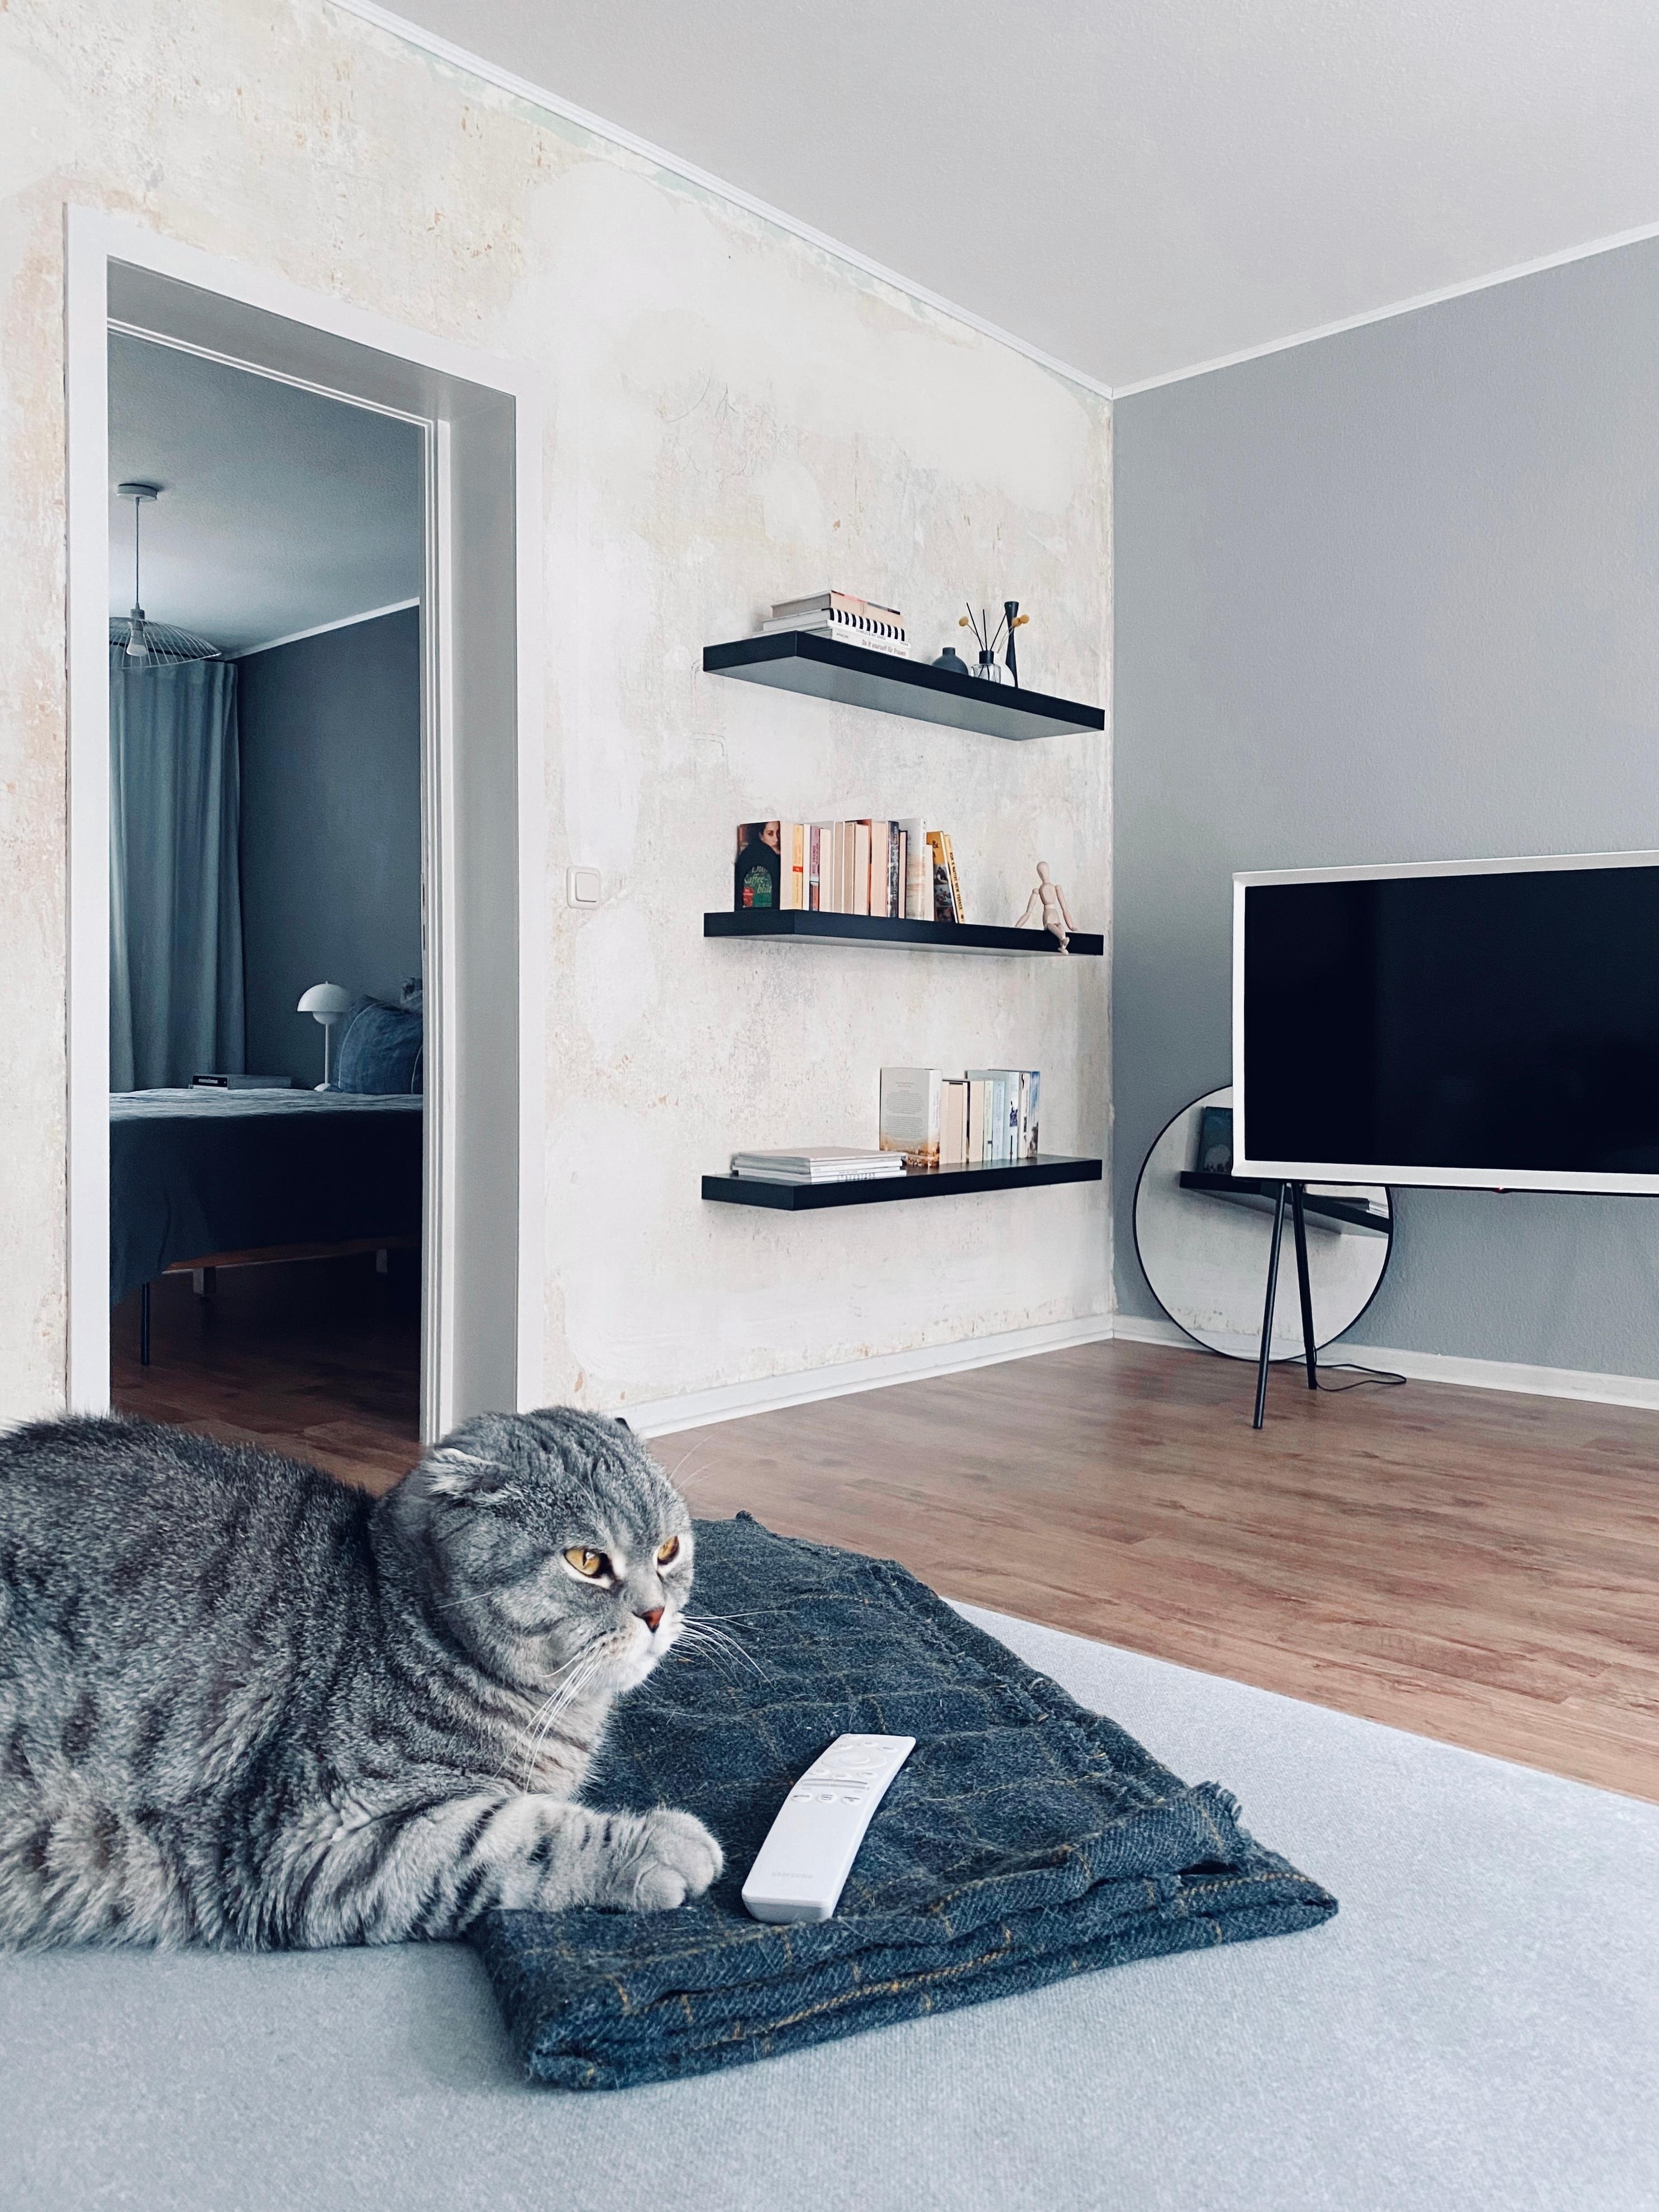 #murzikthegrumpyone beherrscht die Kunst des Ignorierens zu 100% 😅
#nordichome #minimalismus #catlover #livingroom